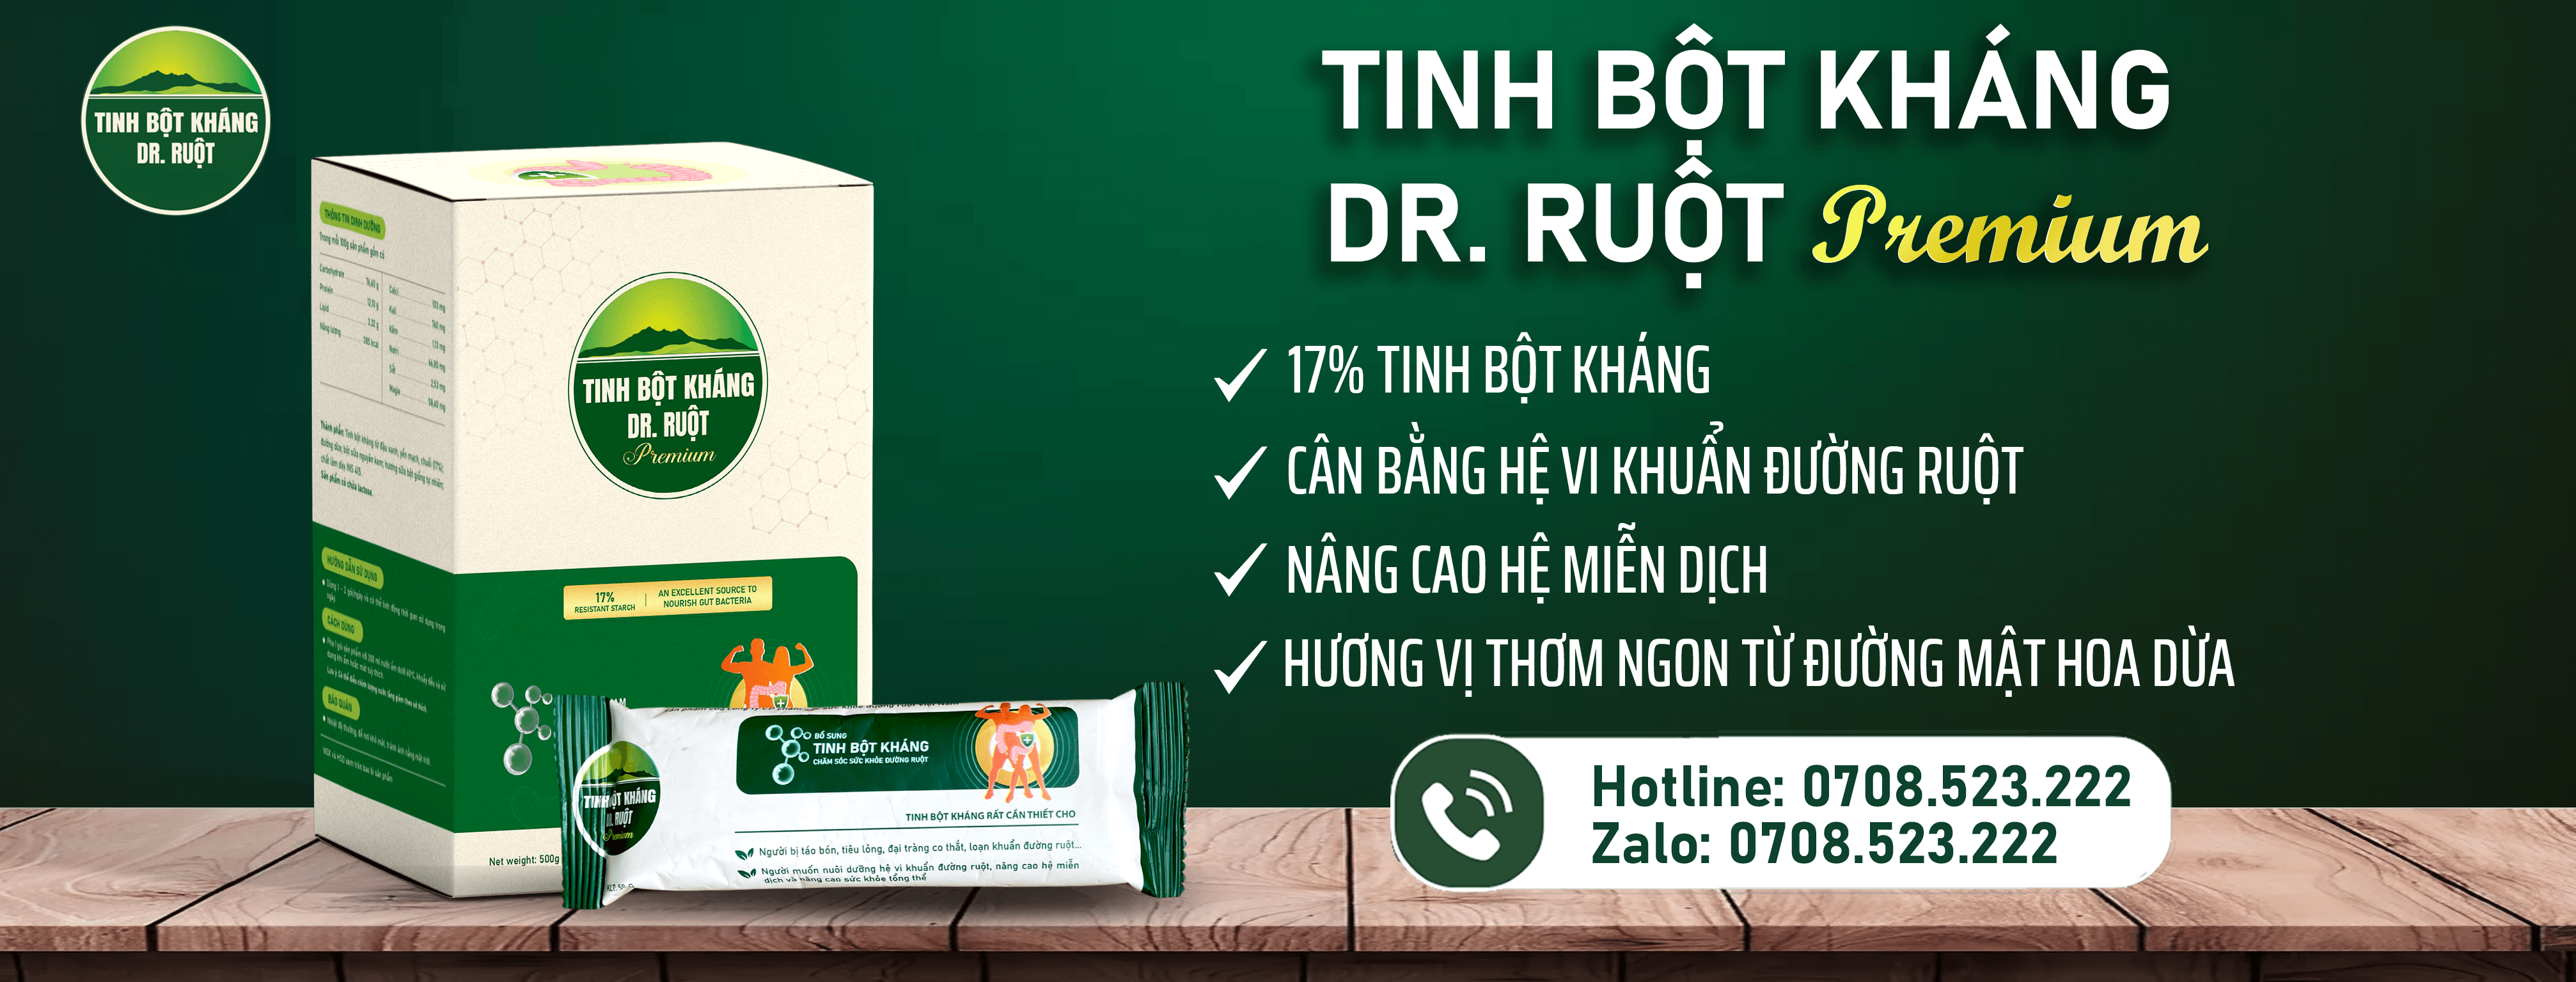 Tinh bột kháng - Dr.Ruột Premium